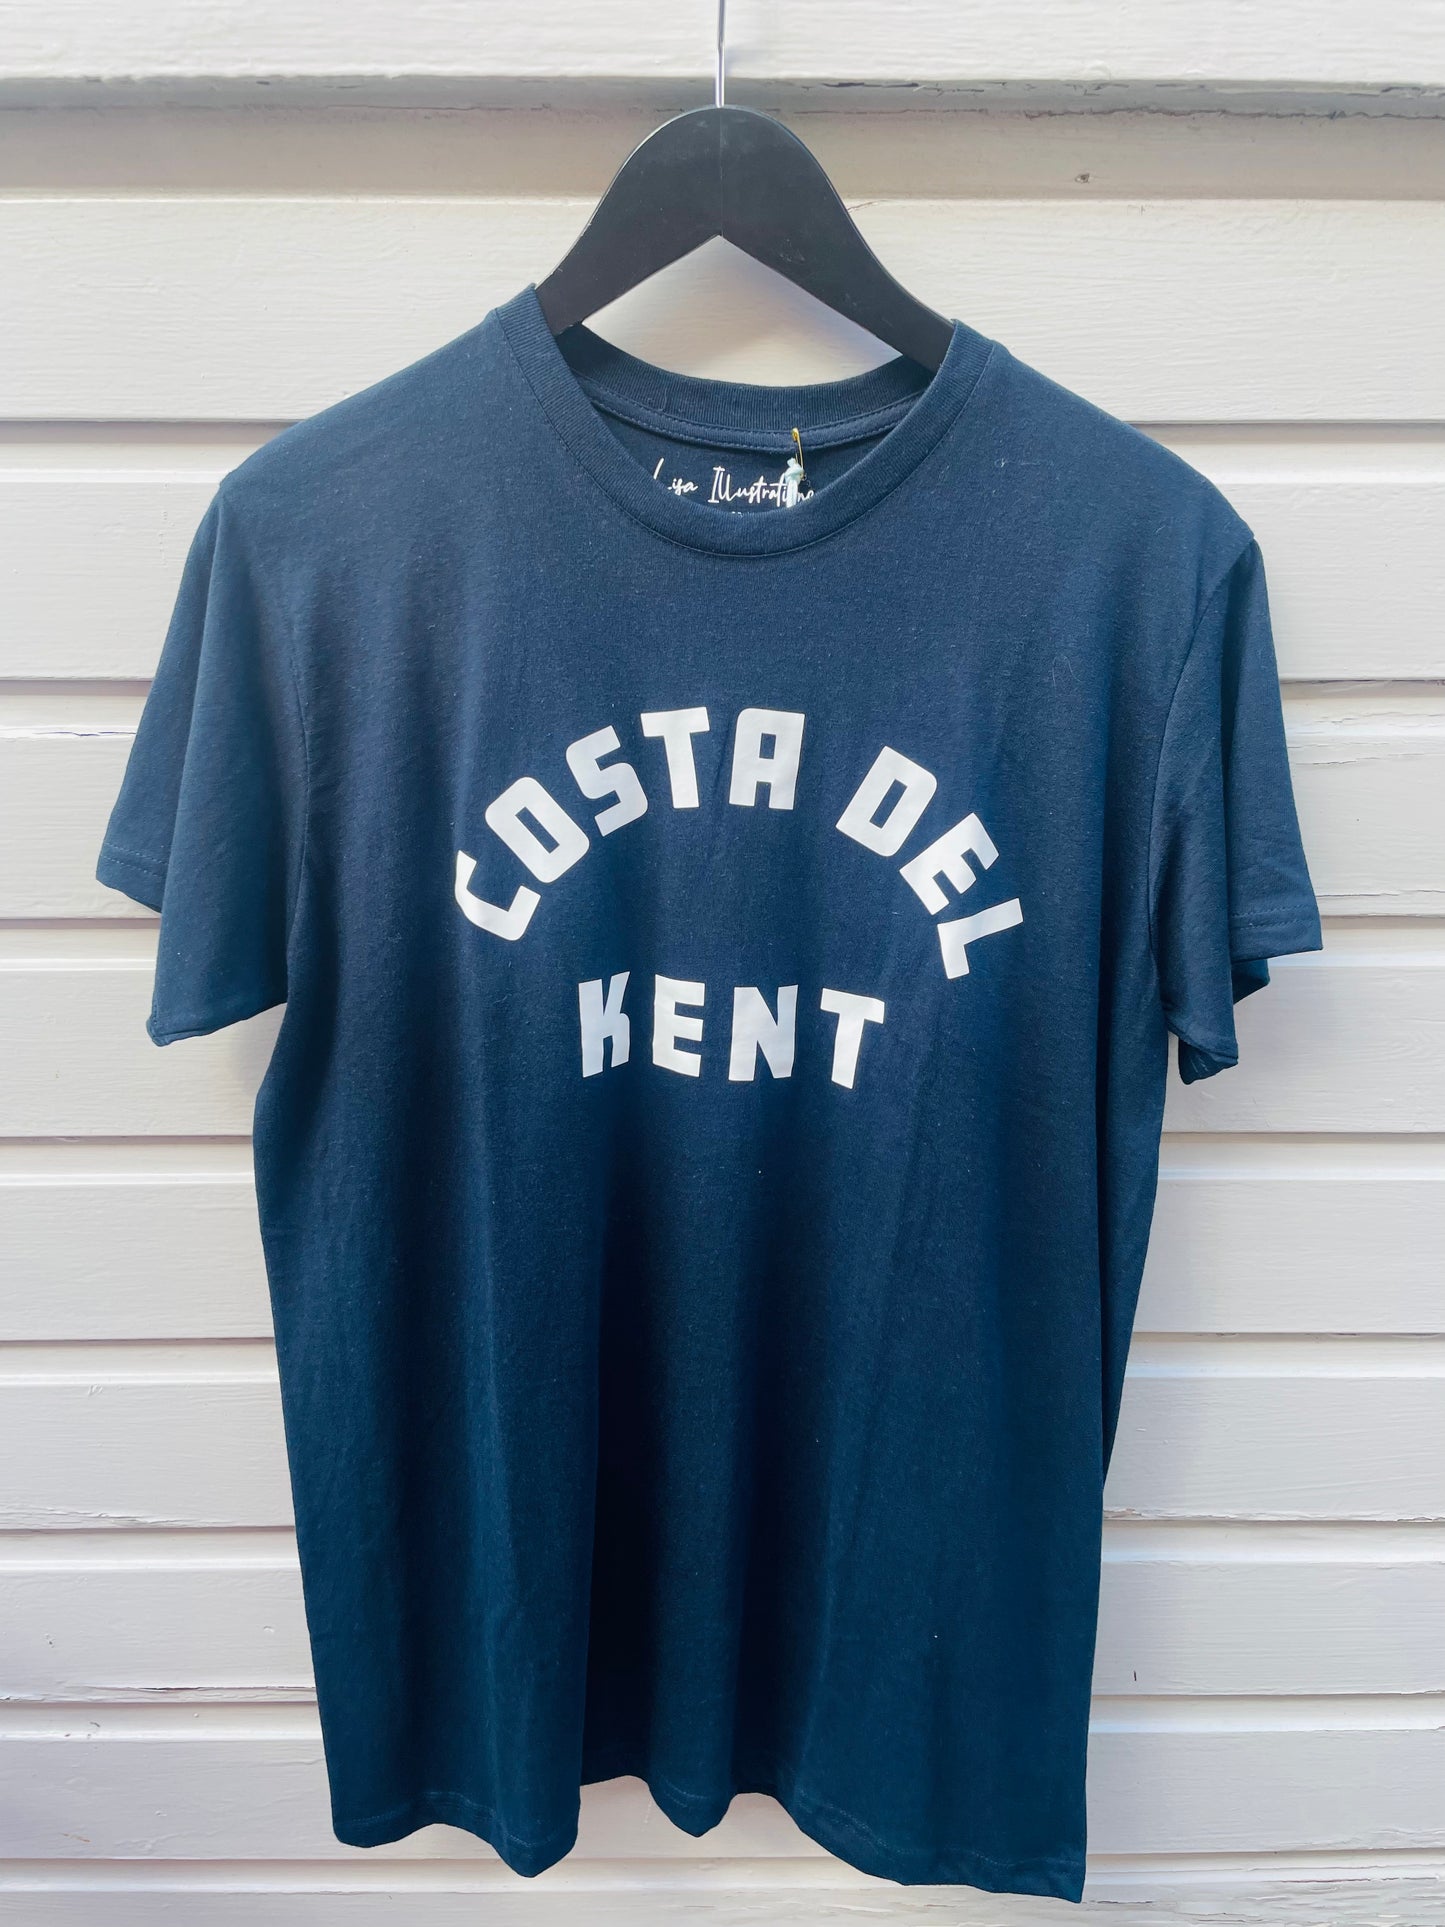 ‘Costa Del Kent’ Adult Unisex Navy T-Shirt